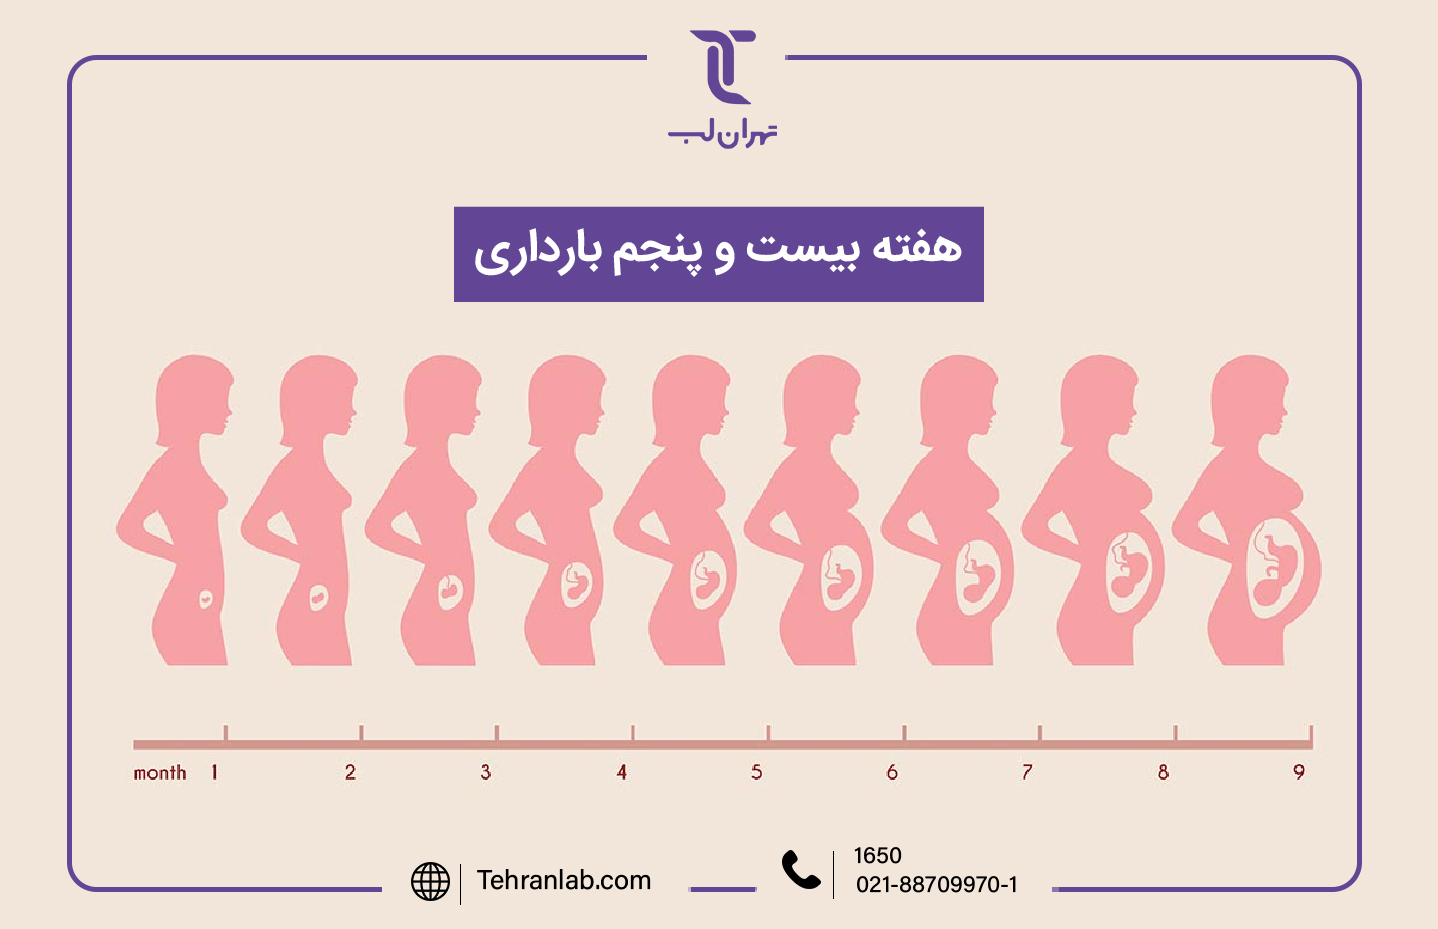 همه چیز درباره هفته بیست و پنجم (25) بارداری | آزمایشگاه تهران لب